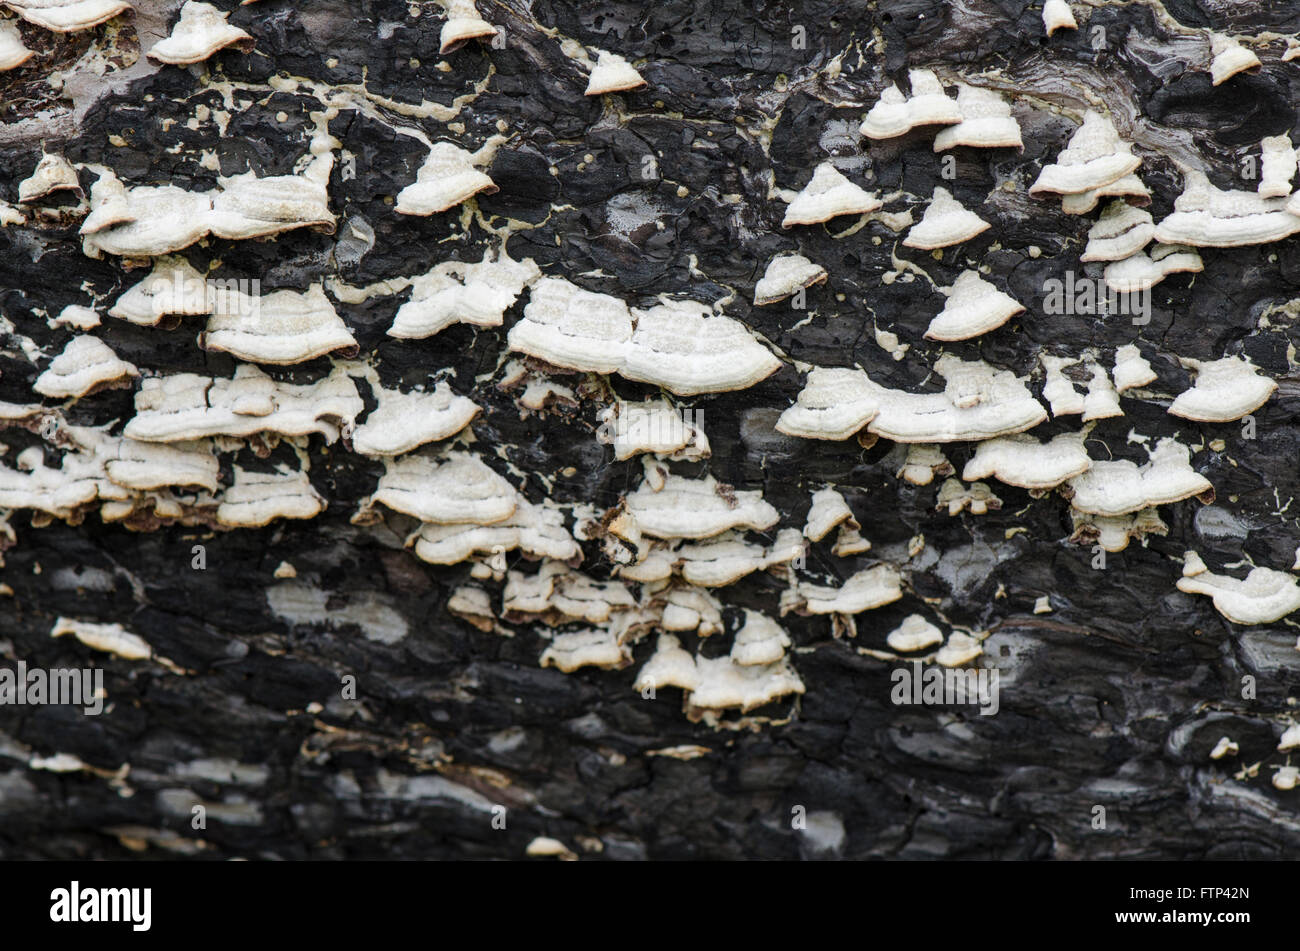 La staffa o mensola di funghi sui morti bruciati di corteccia di albero. Foto Stock